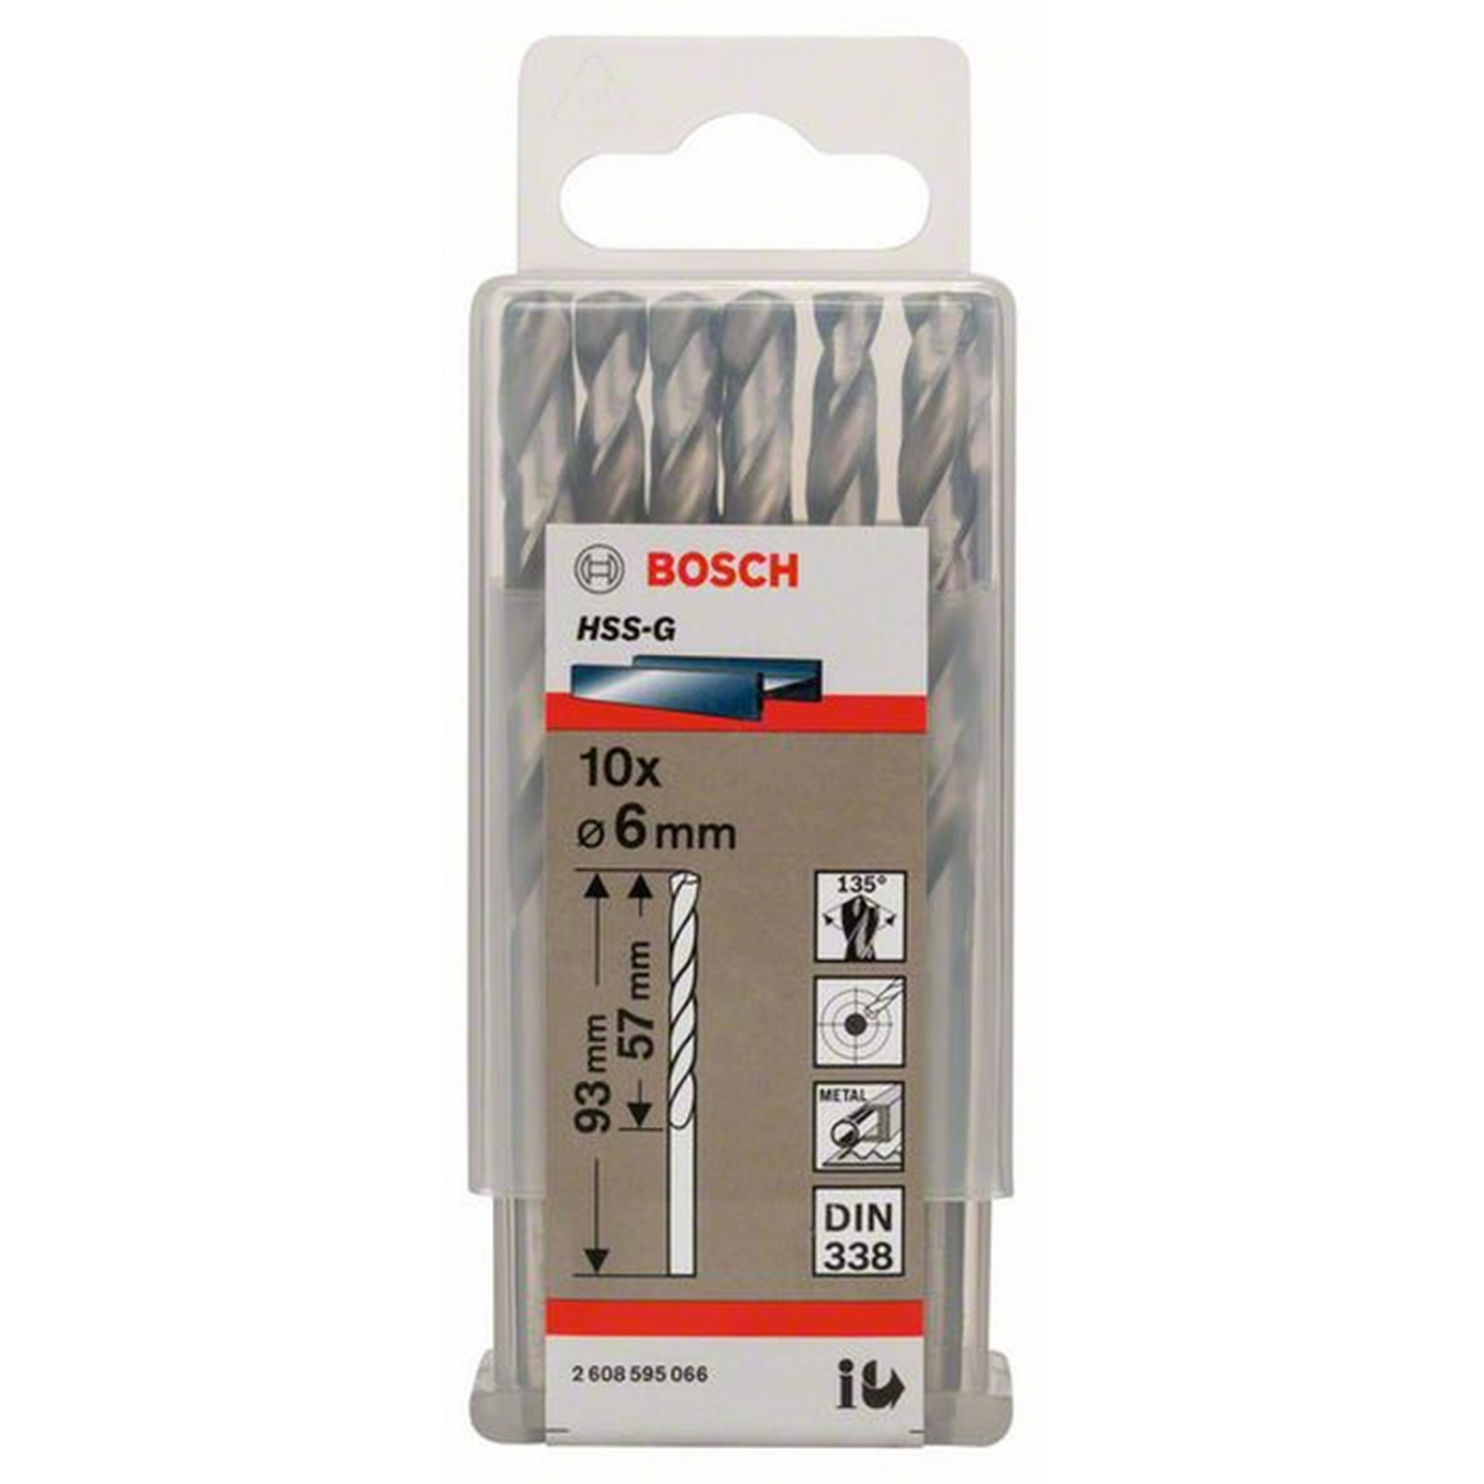 Сверло по металлу Bosch Eco 10 HSS-G 6мм 2608595066 сверло по металлу bosch eco 10 hss g 5мм 2608595062